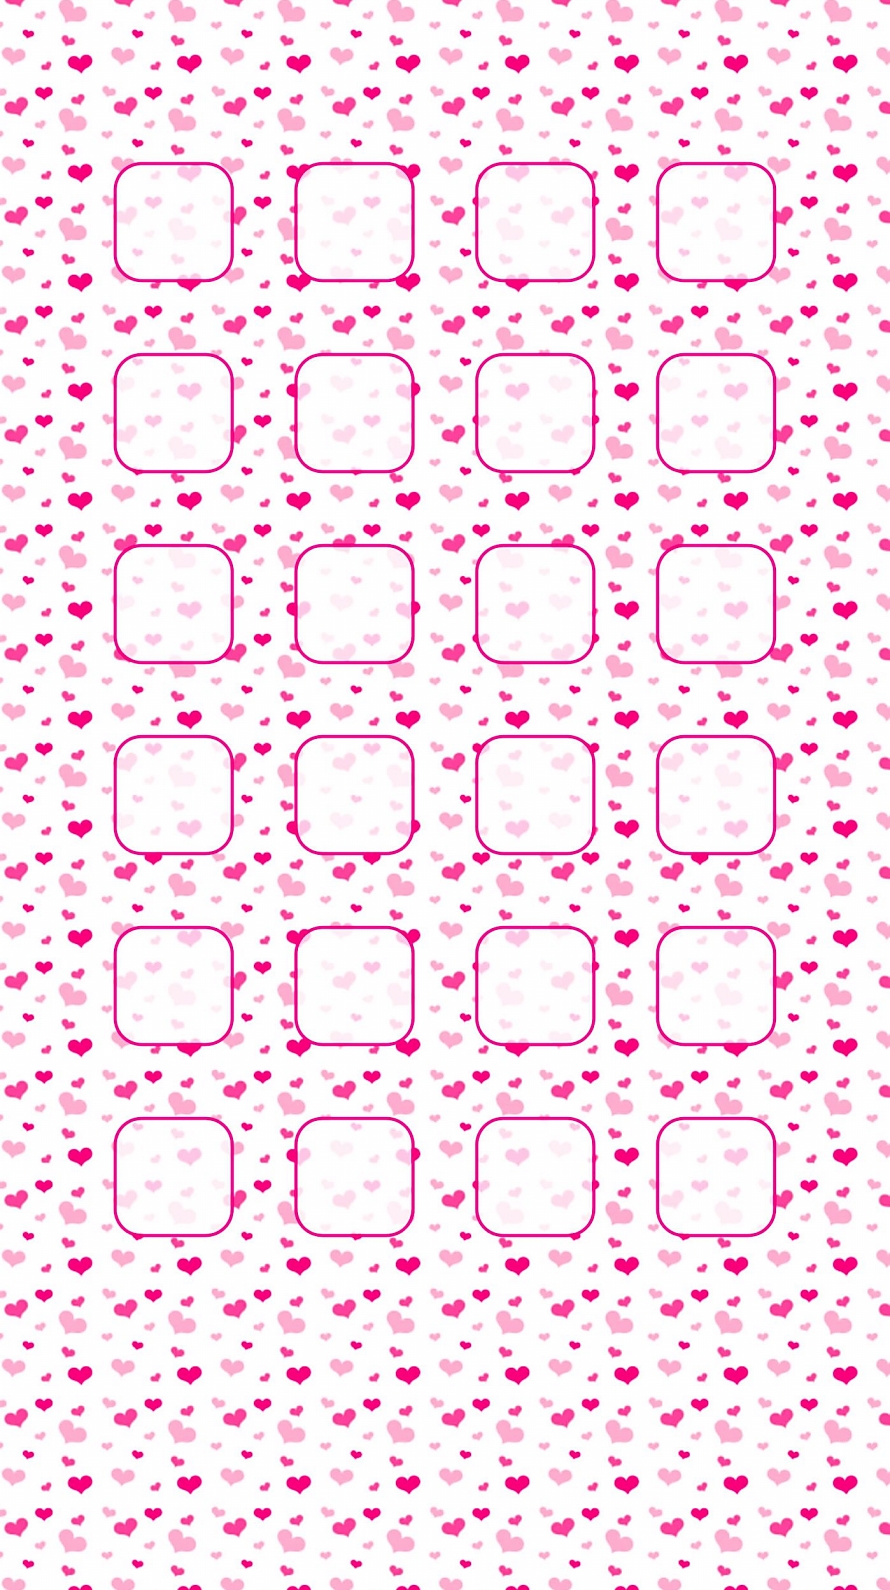 エミュレートする ナラーバー 動的 Iphone 壁紙 可愛い ピンク Jyanome Sushi Jp